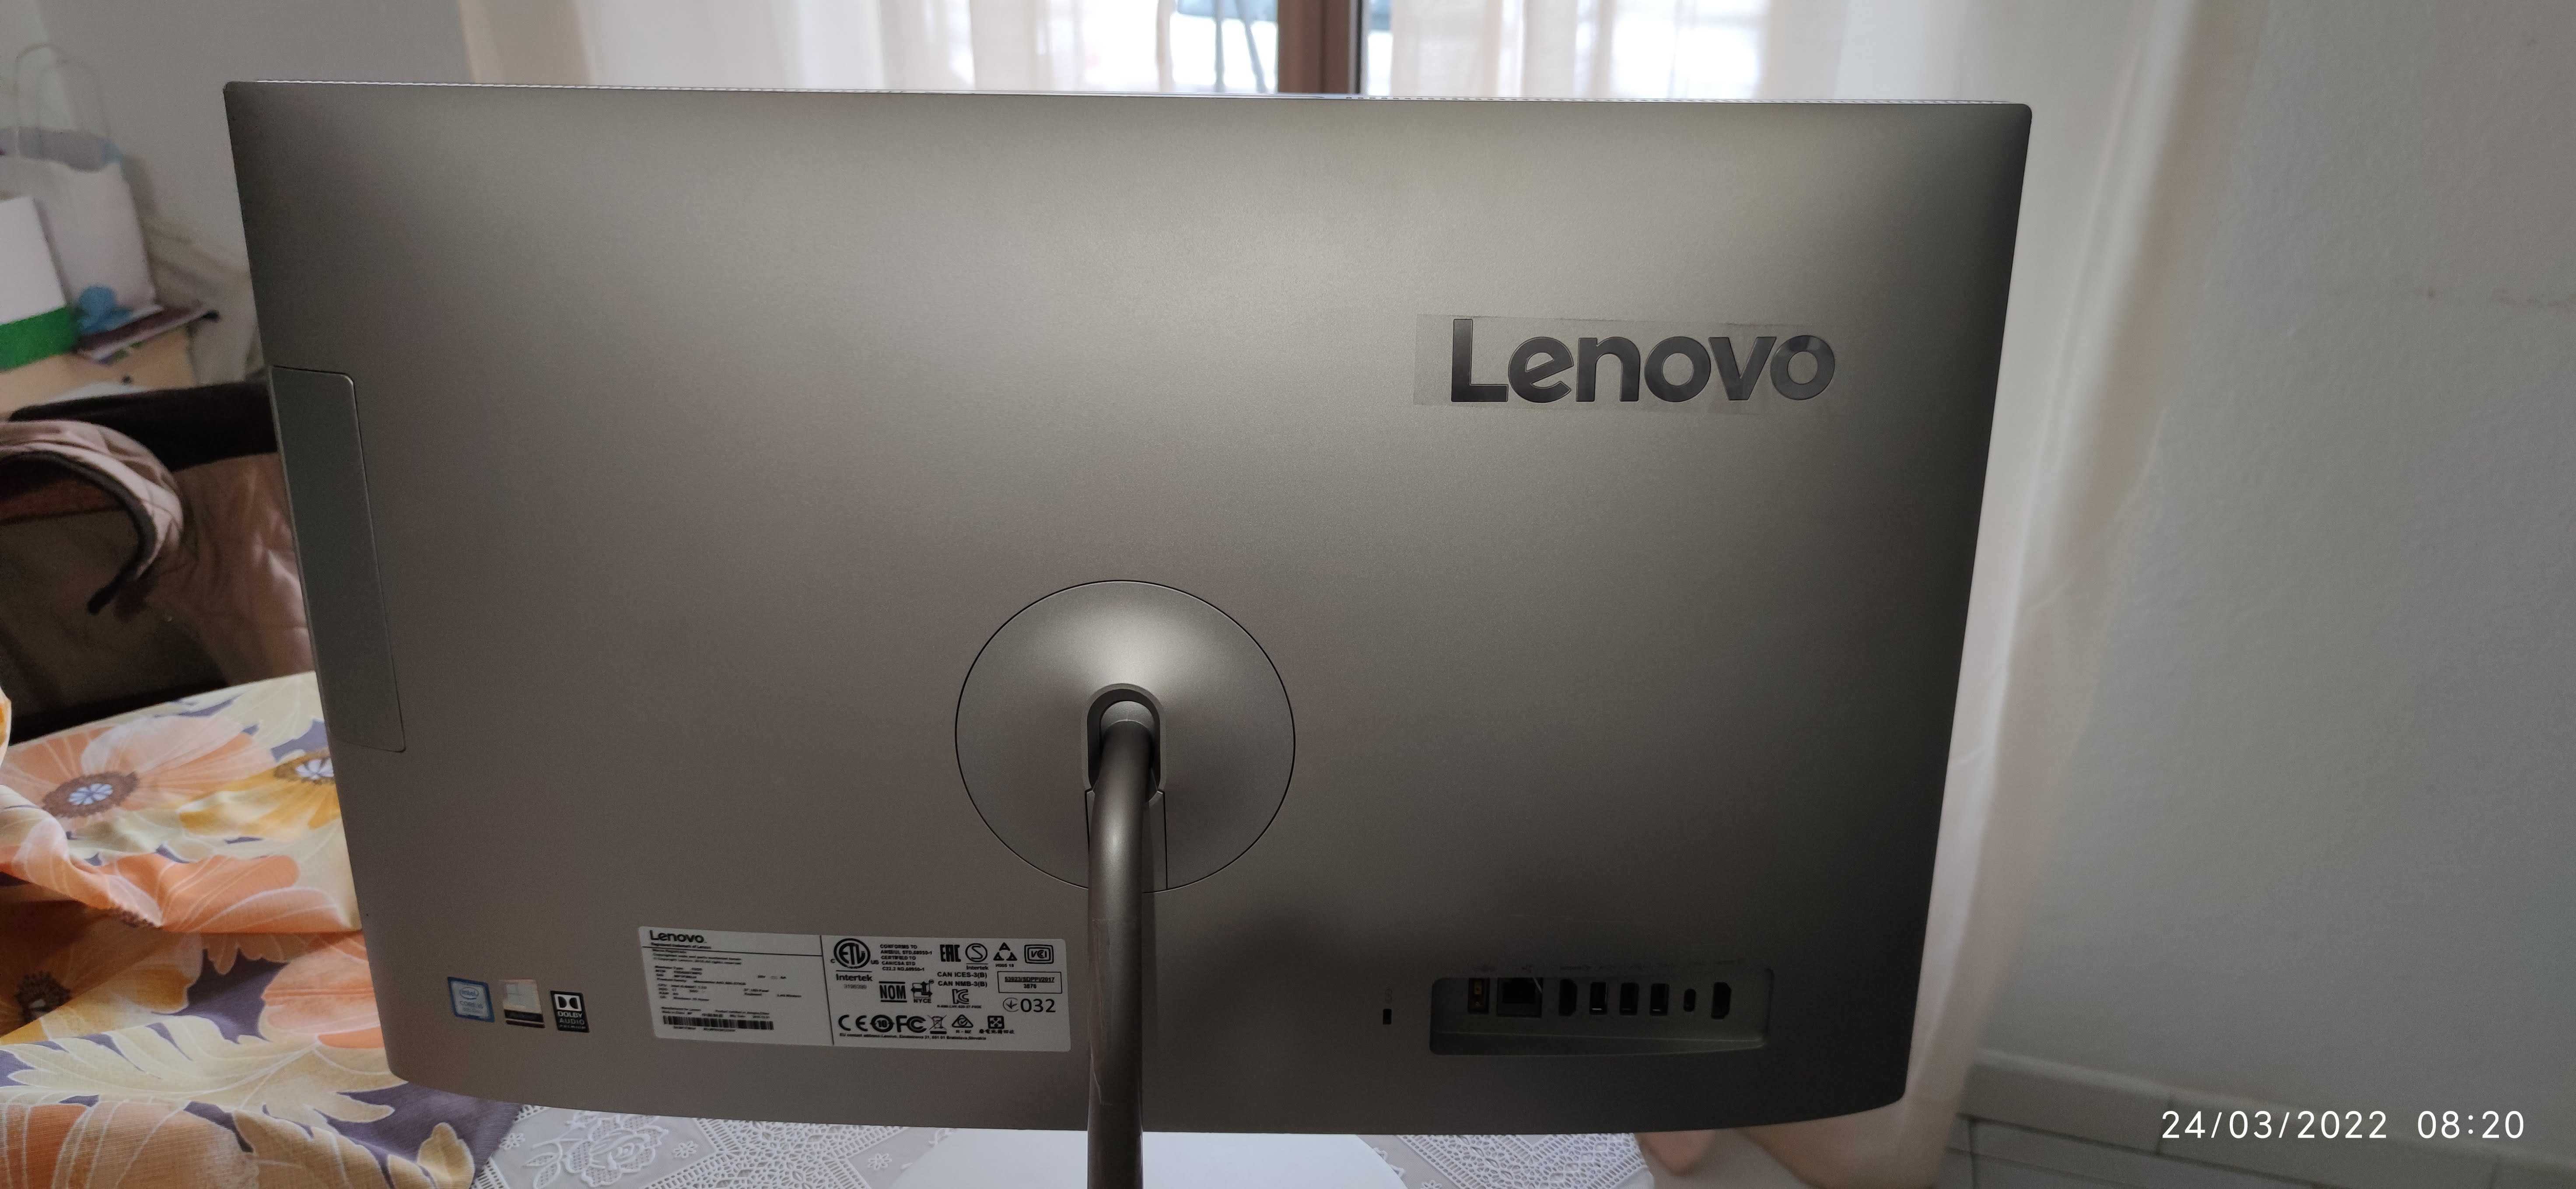 Para Peças - Vendo Computador Lenovo AIO